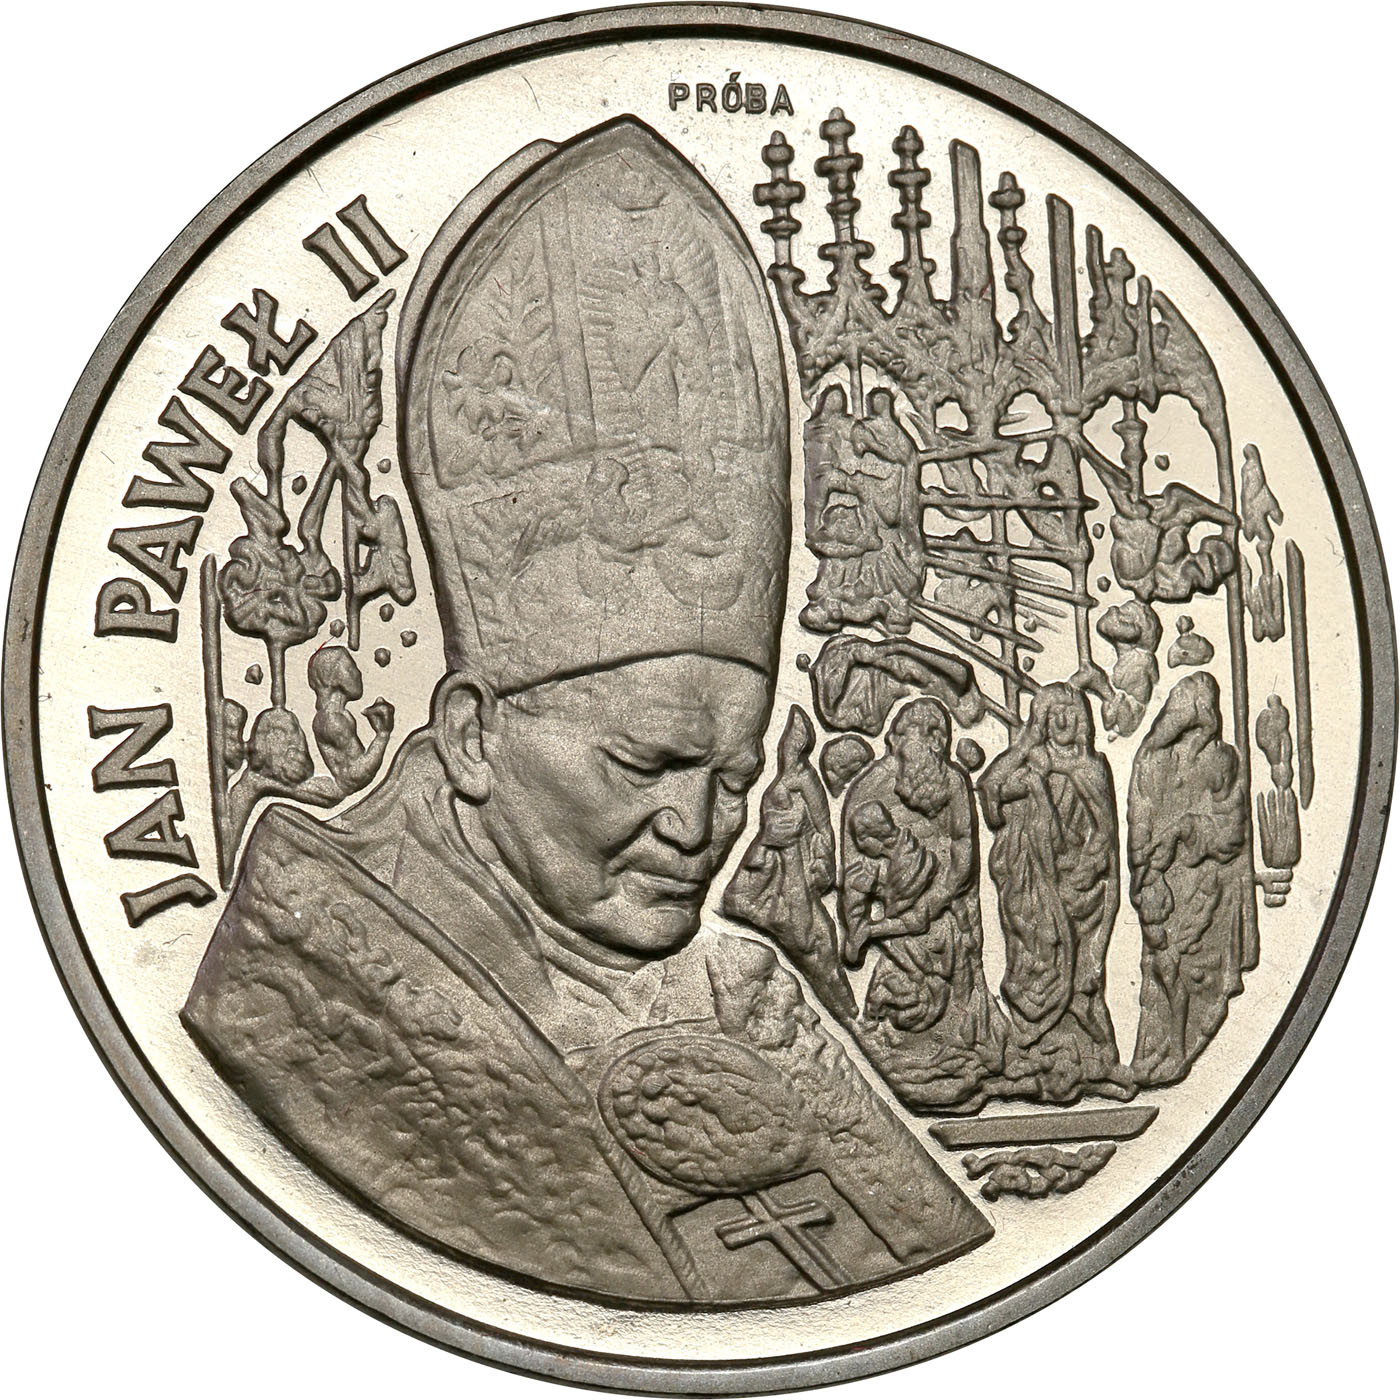 PRL. PRÓBA Nikiel 200 000 złotych 1991 -  Jan Paweł II – Ołtarz – Rzadka